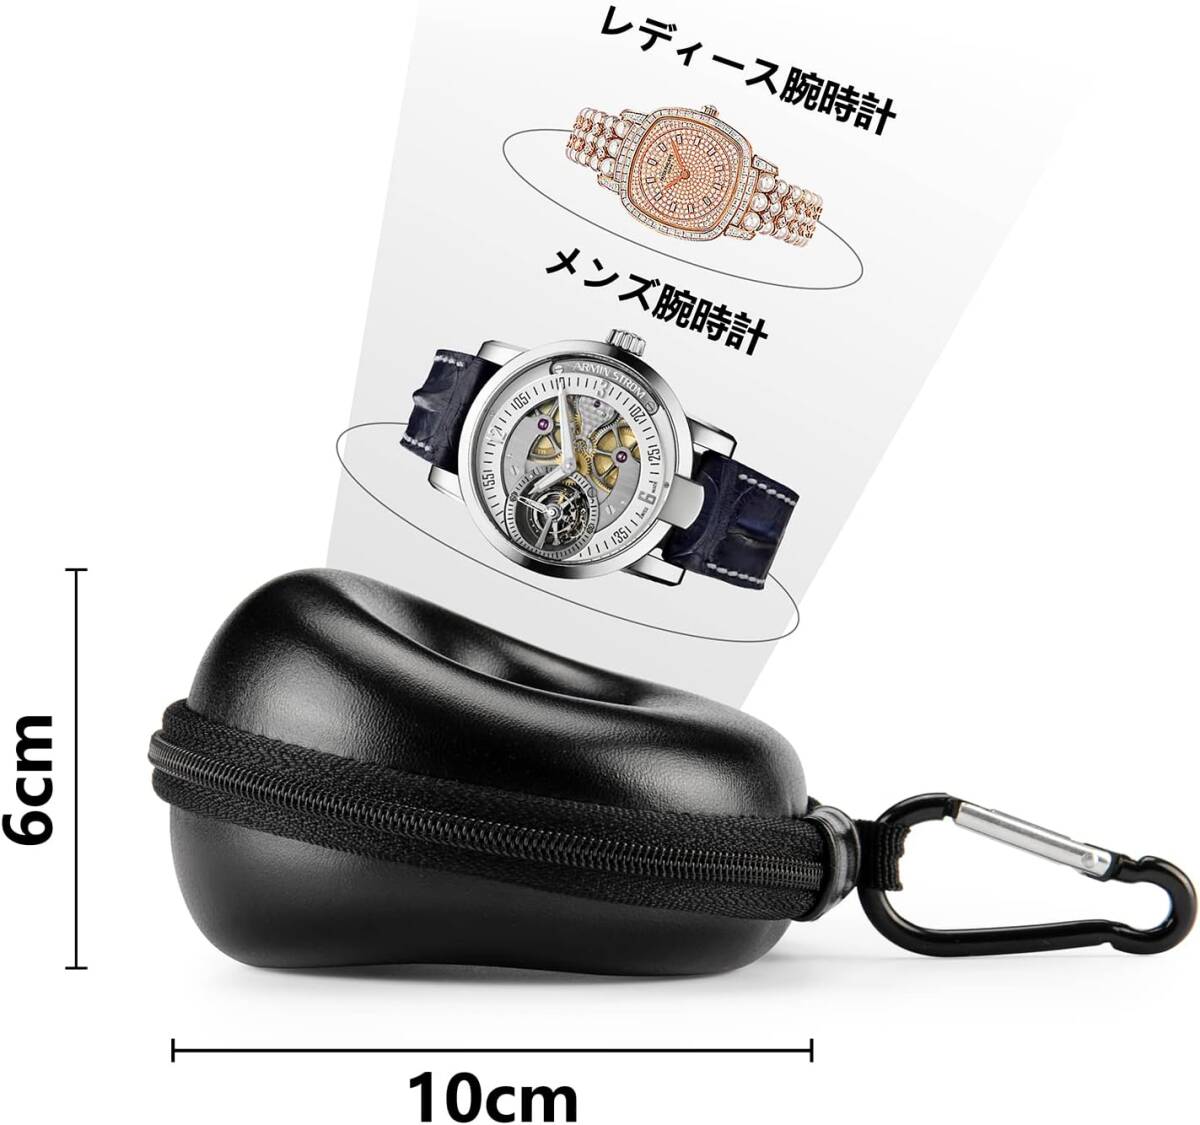  наручные часы кейс для хранения кейс для часов черный Smart для часов путешествие командировка часы кейс для хранения Watch Case 52MM до PU кожа specification чёрный 